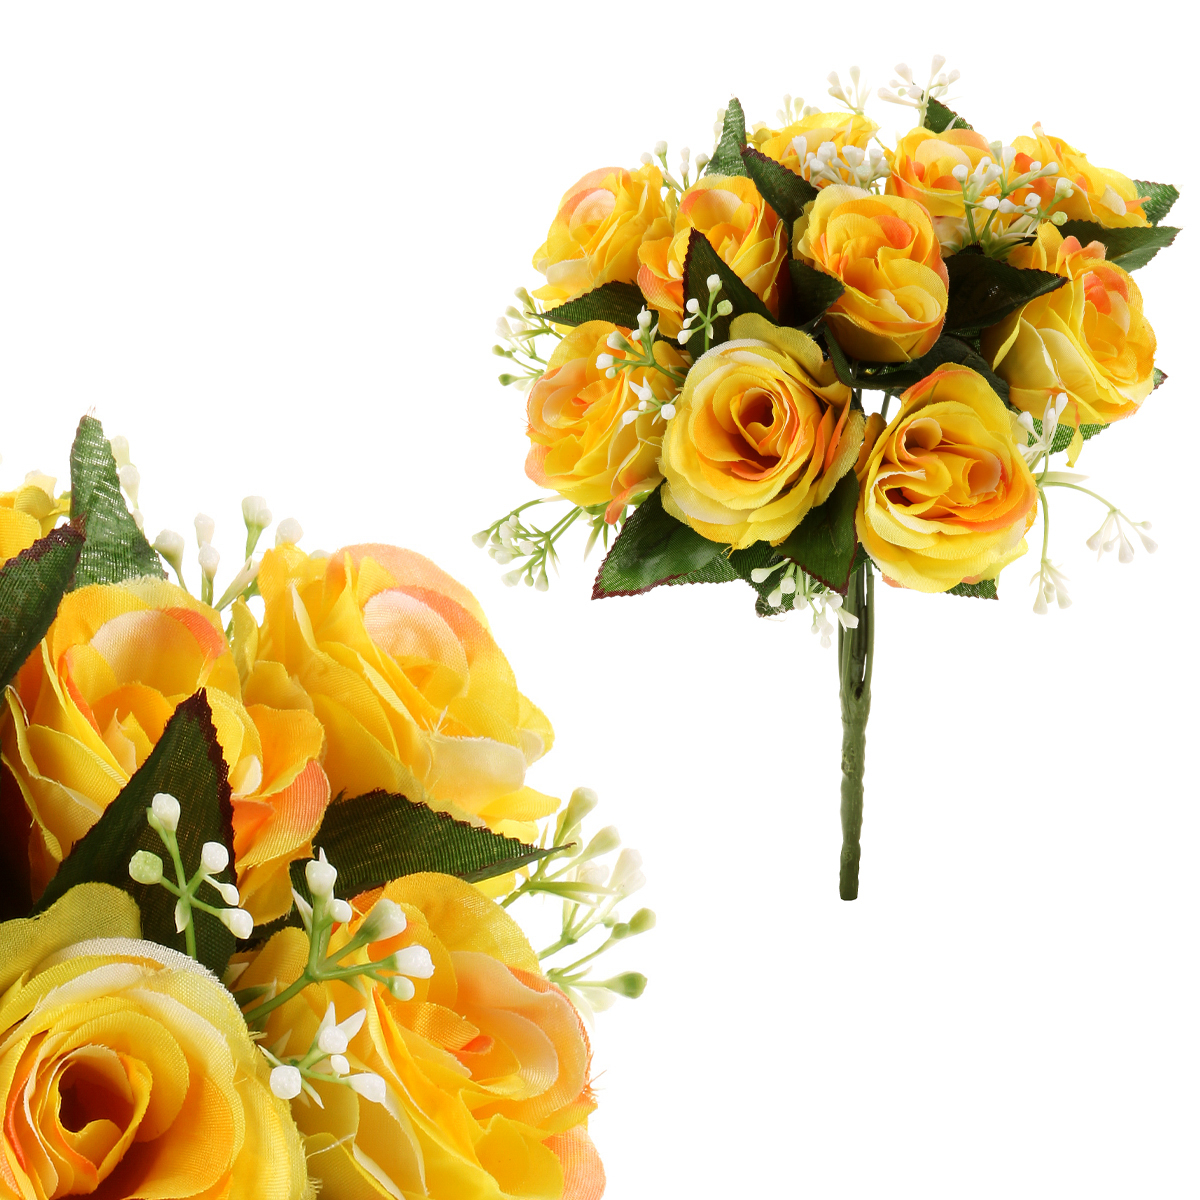 Růže, puget, brava žlutá. Květina umělá.